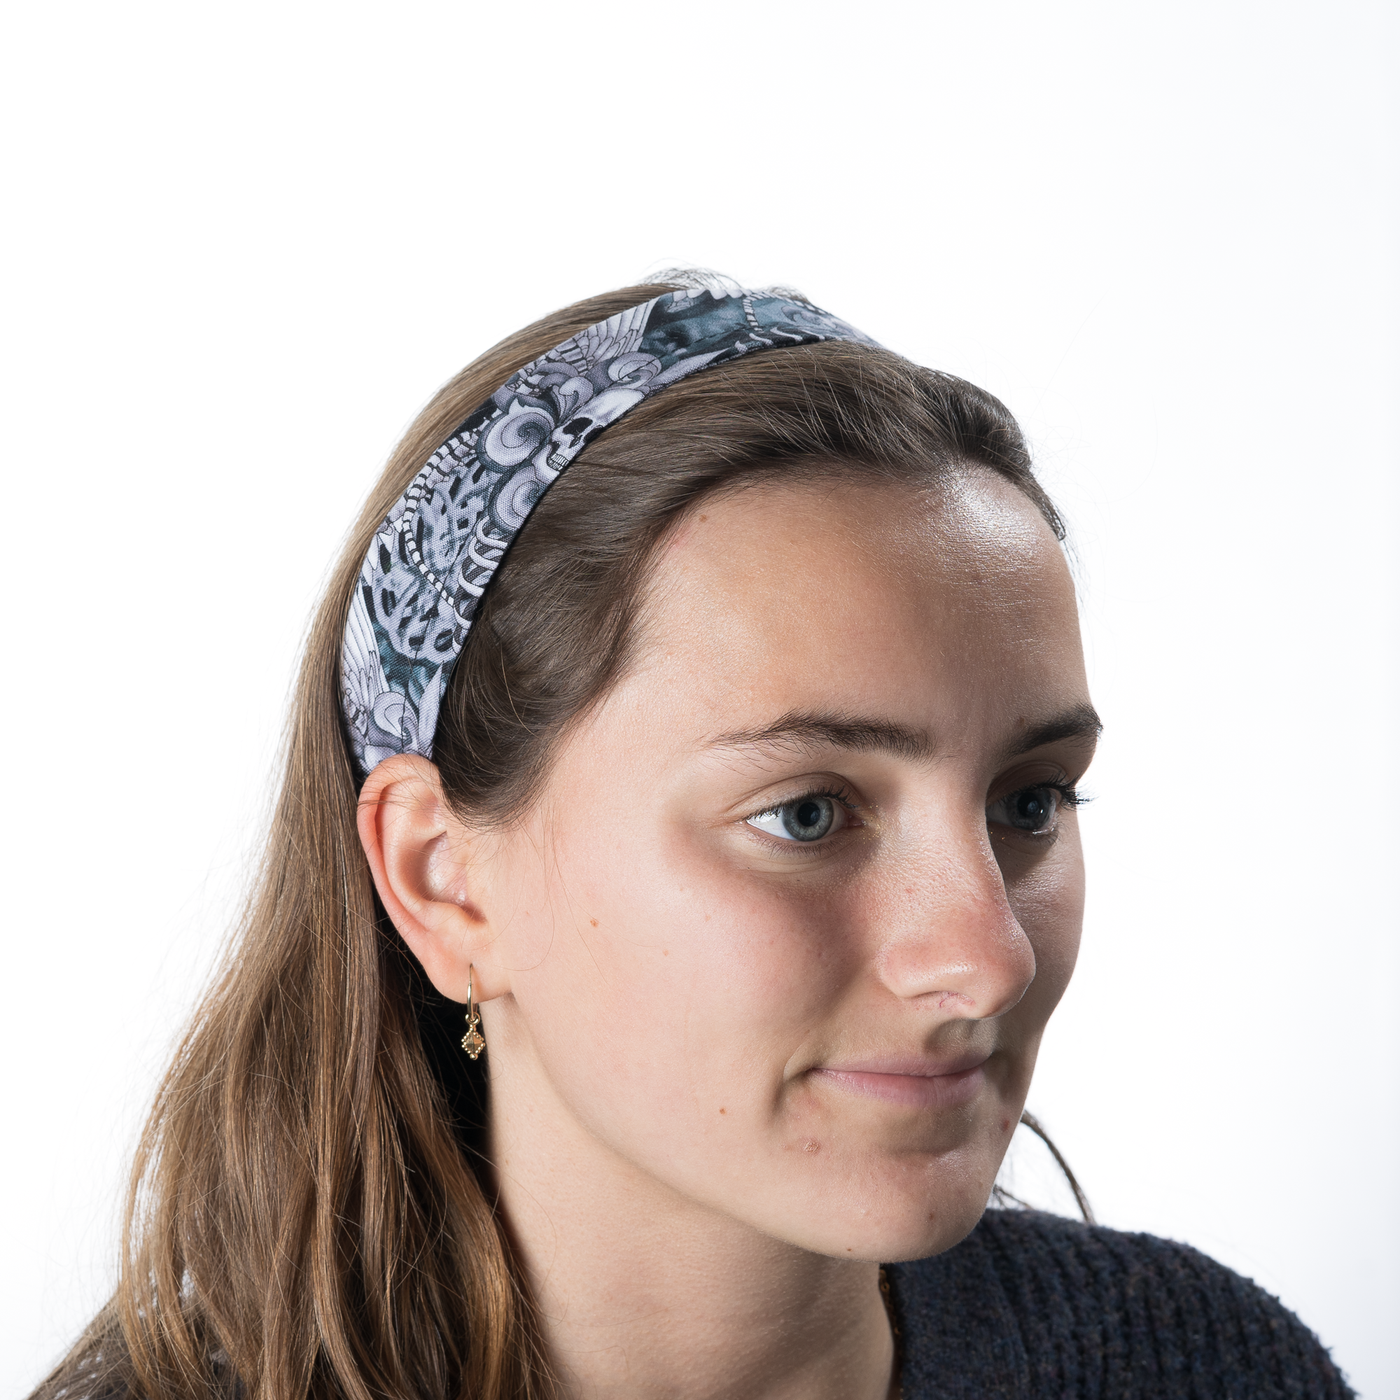 Winged Skull & Vertebrae Headband ~ Handmade from 100% cotton